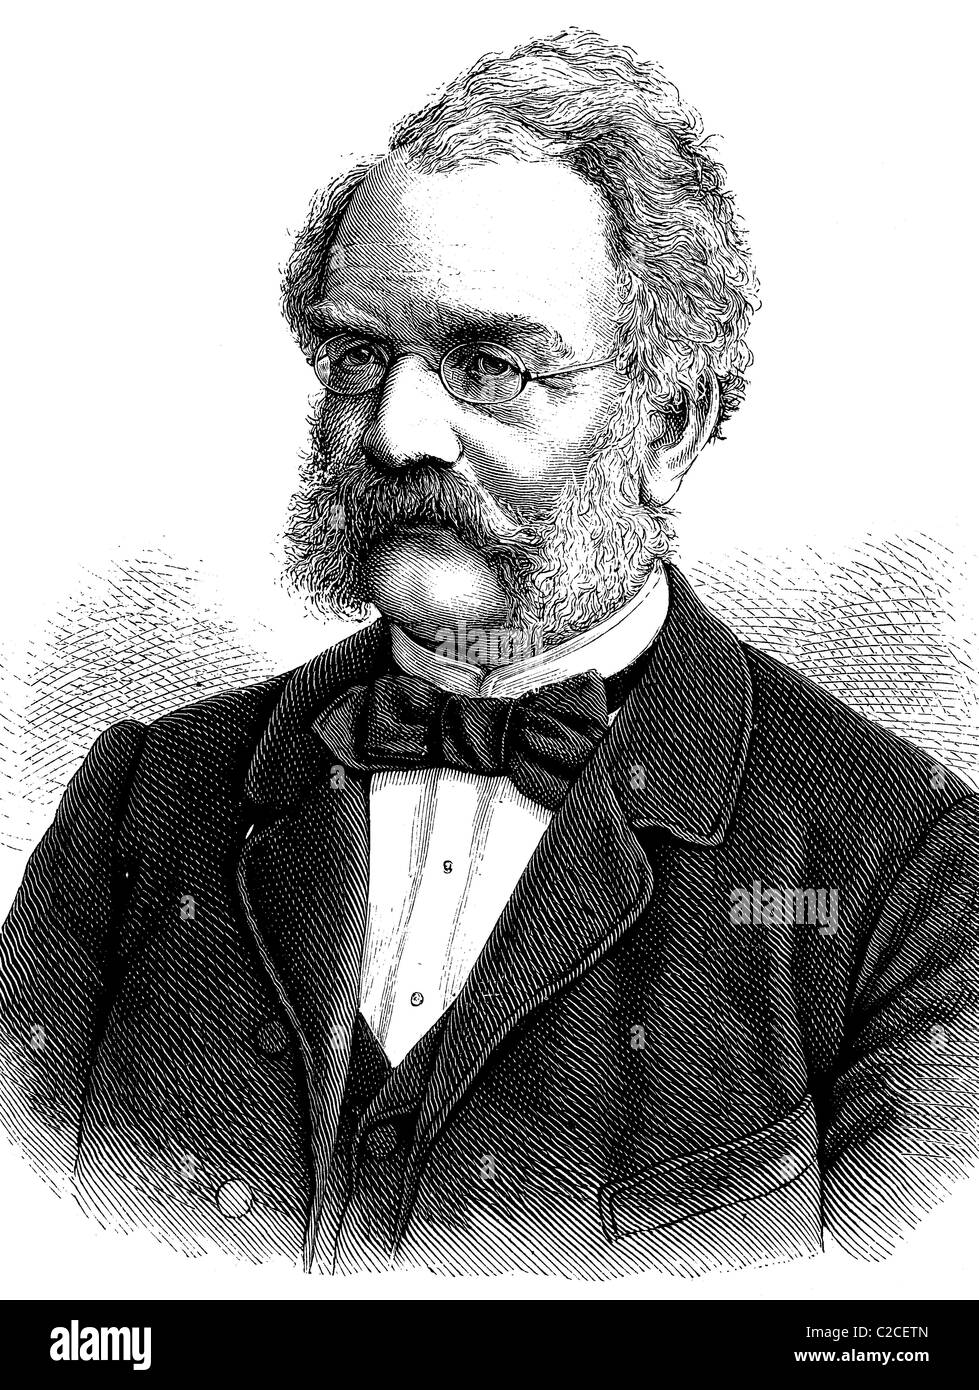 Werner von Siemens, 1816 - 1892, inventor, fundador de la ingeniería eléctrica y fundador de Siemens AG, ilustración histórica Foto de stock